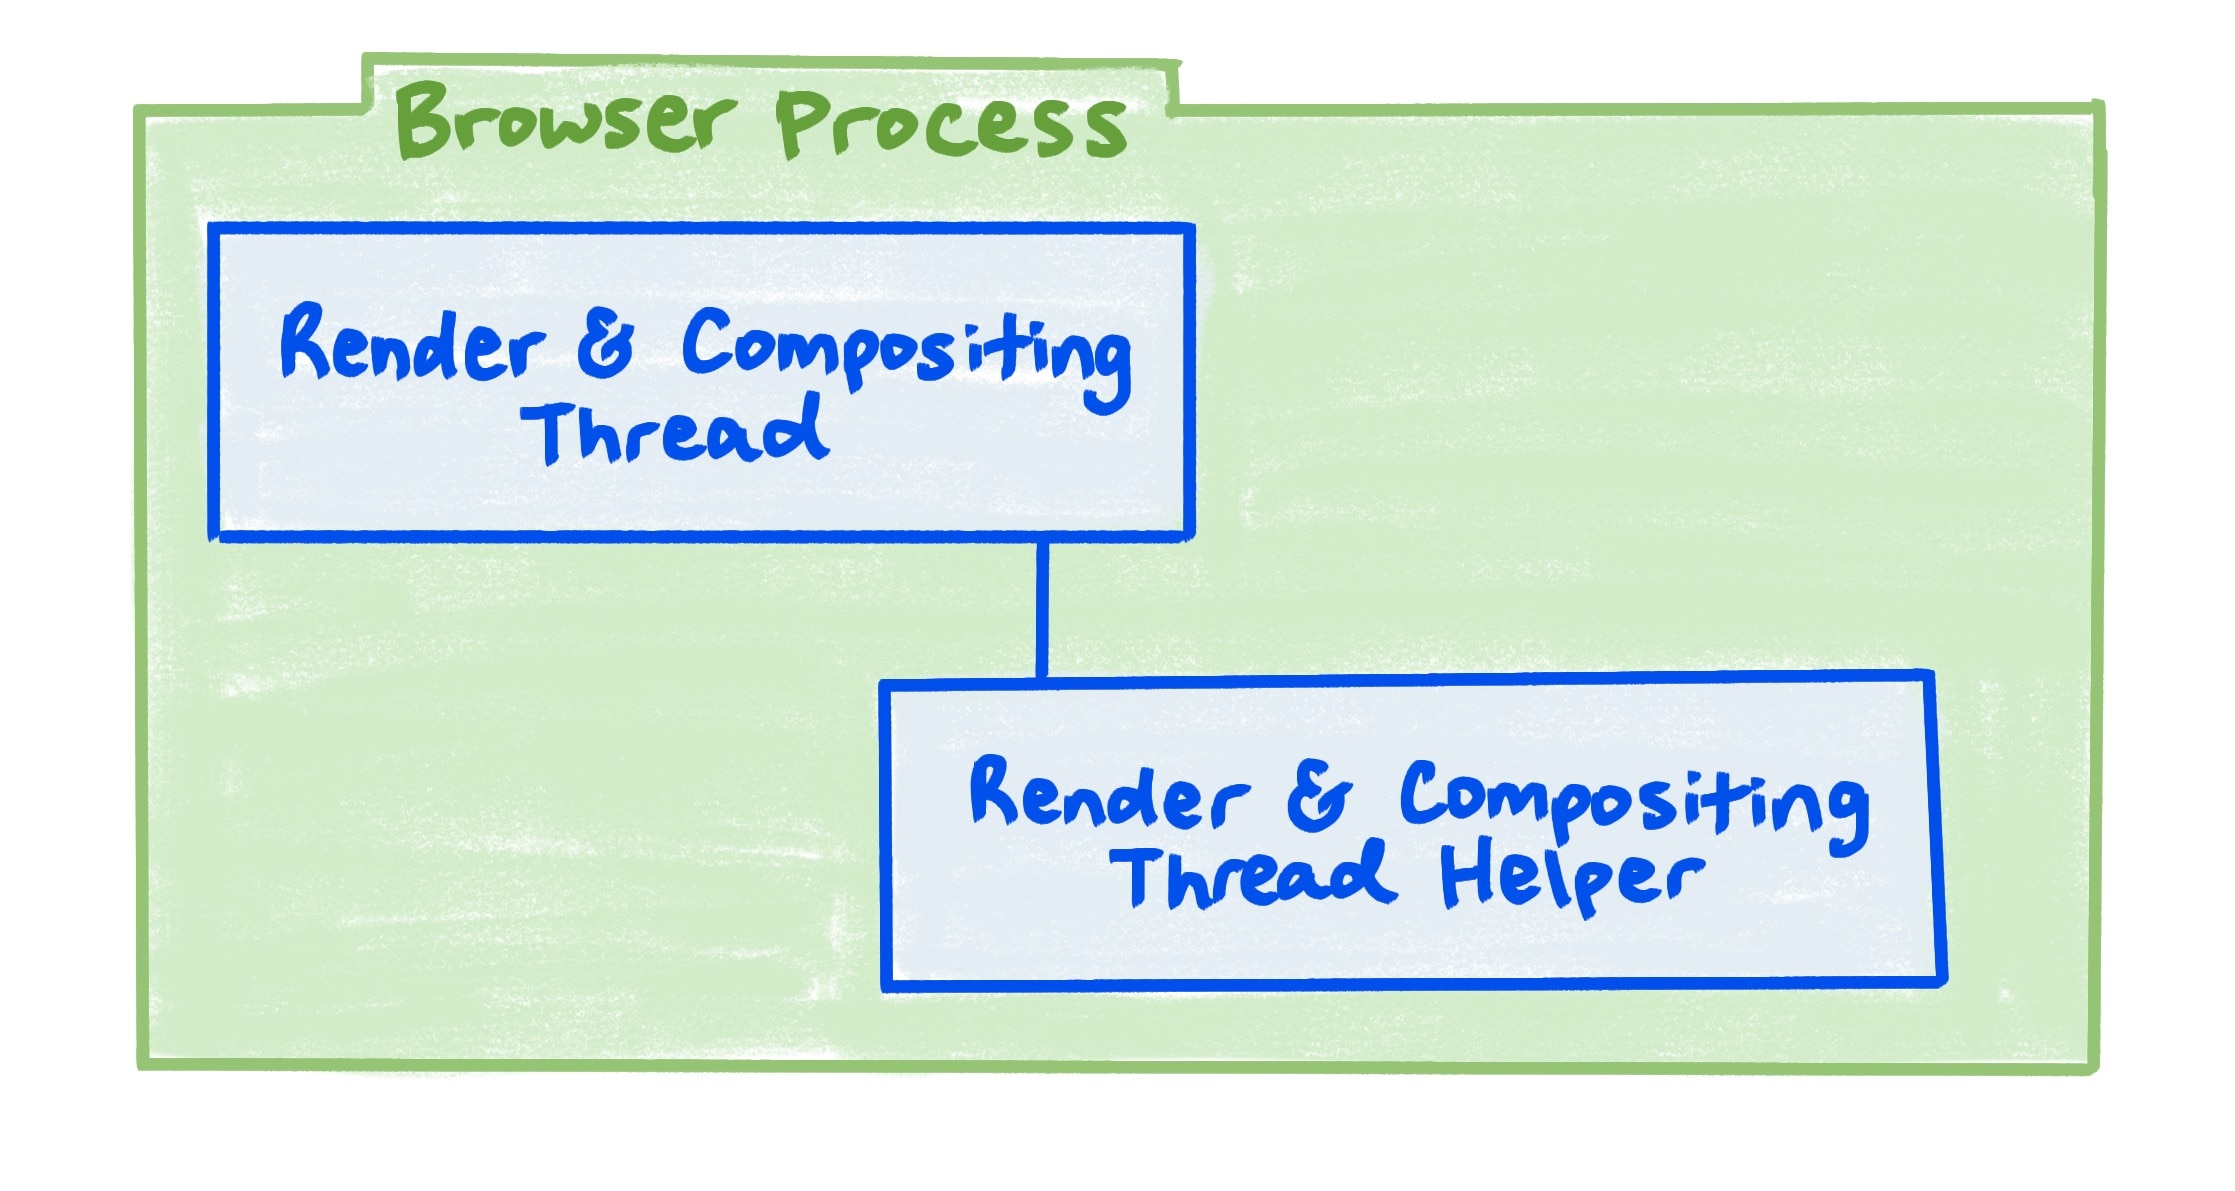 Un diagrama del proceso del navegador que muestra la relación entre la renderización y el subproceso de composición, y el asistente de renderización y del subproceso de composición.